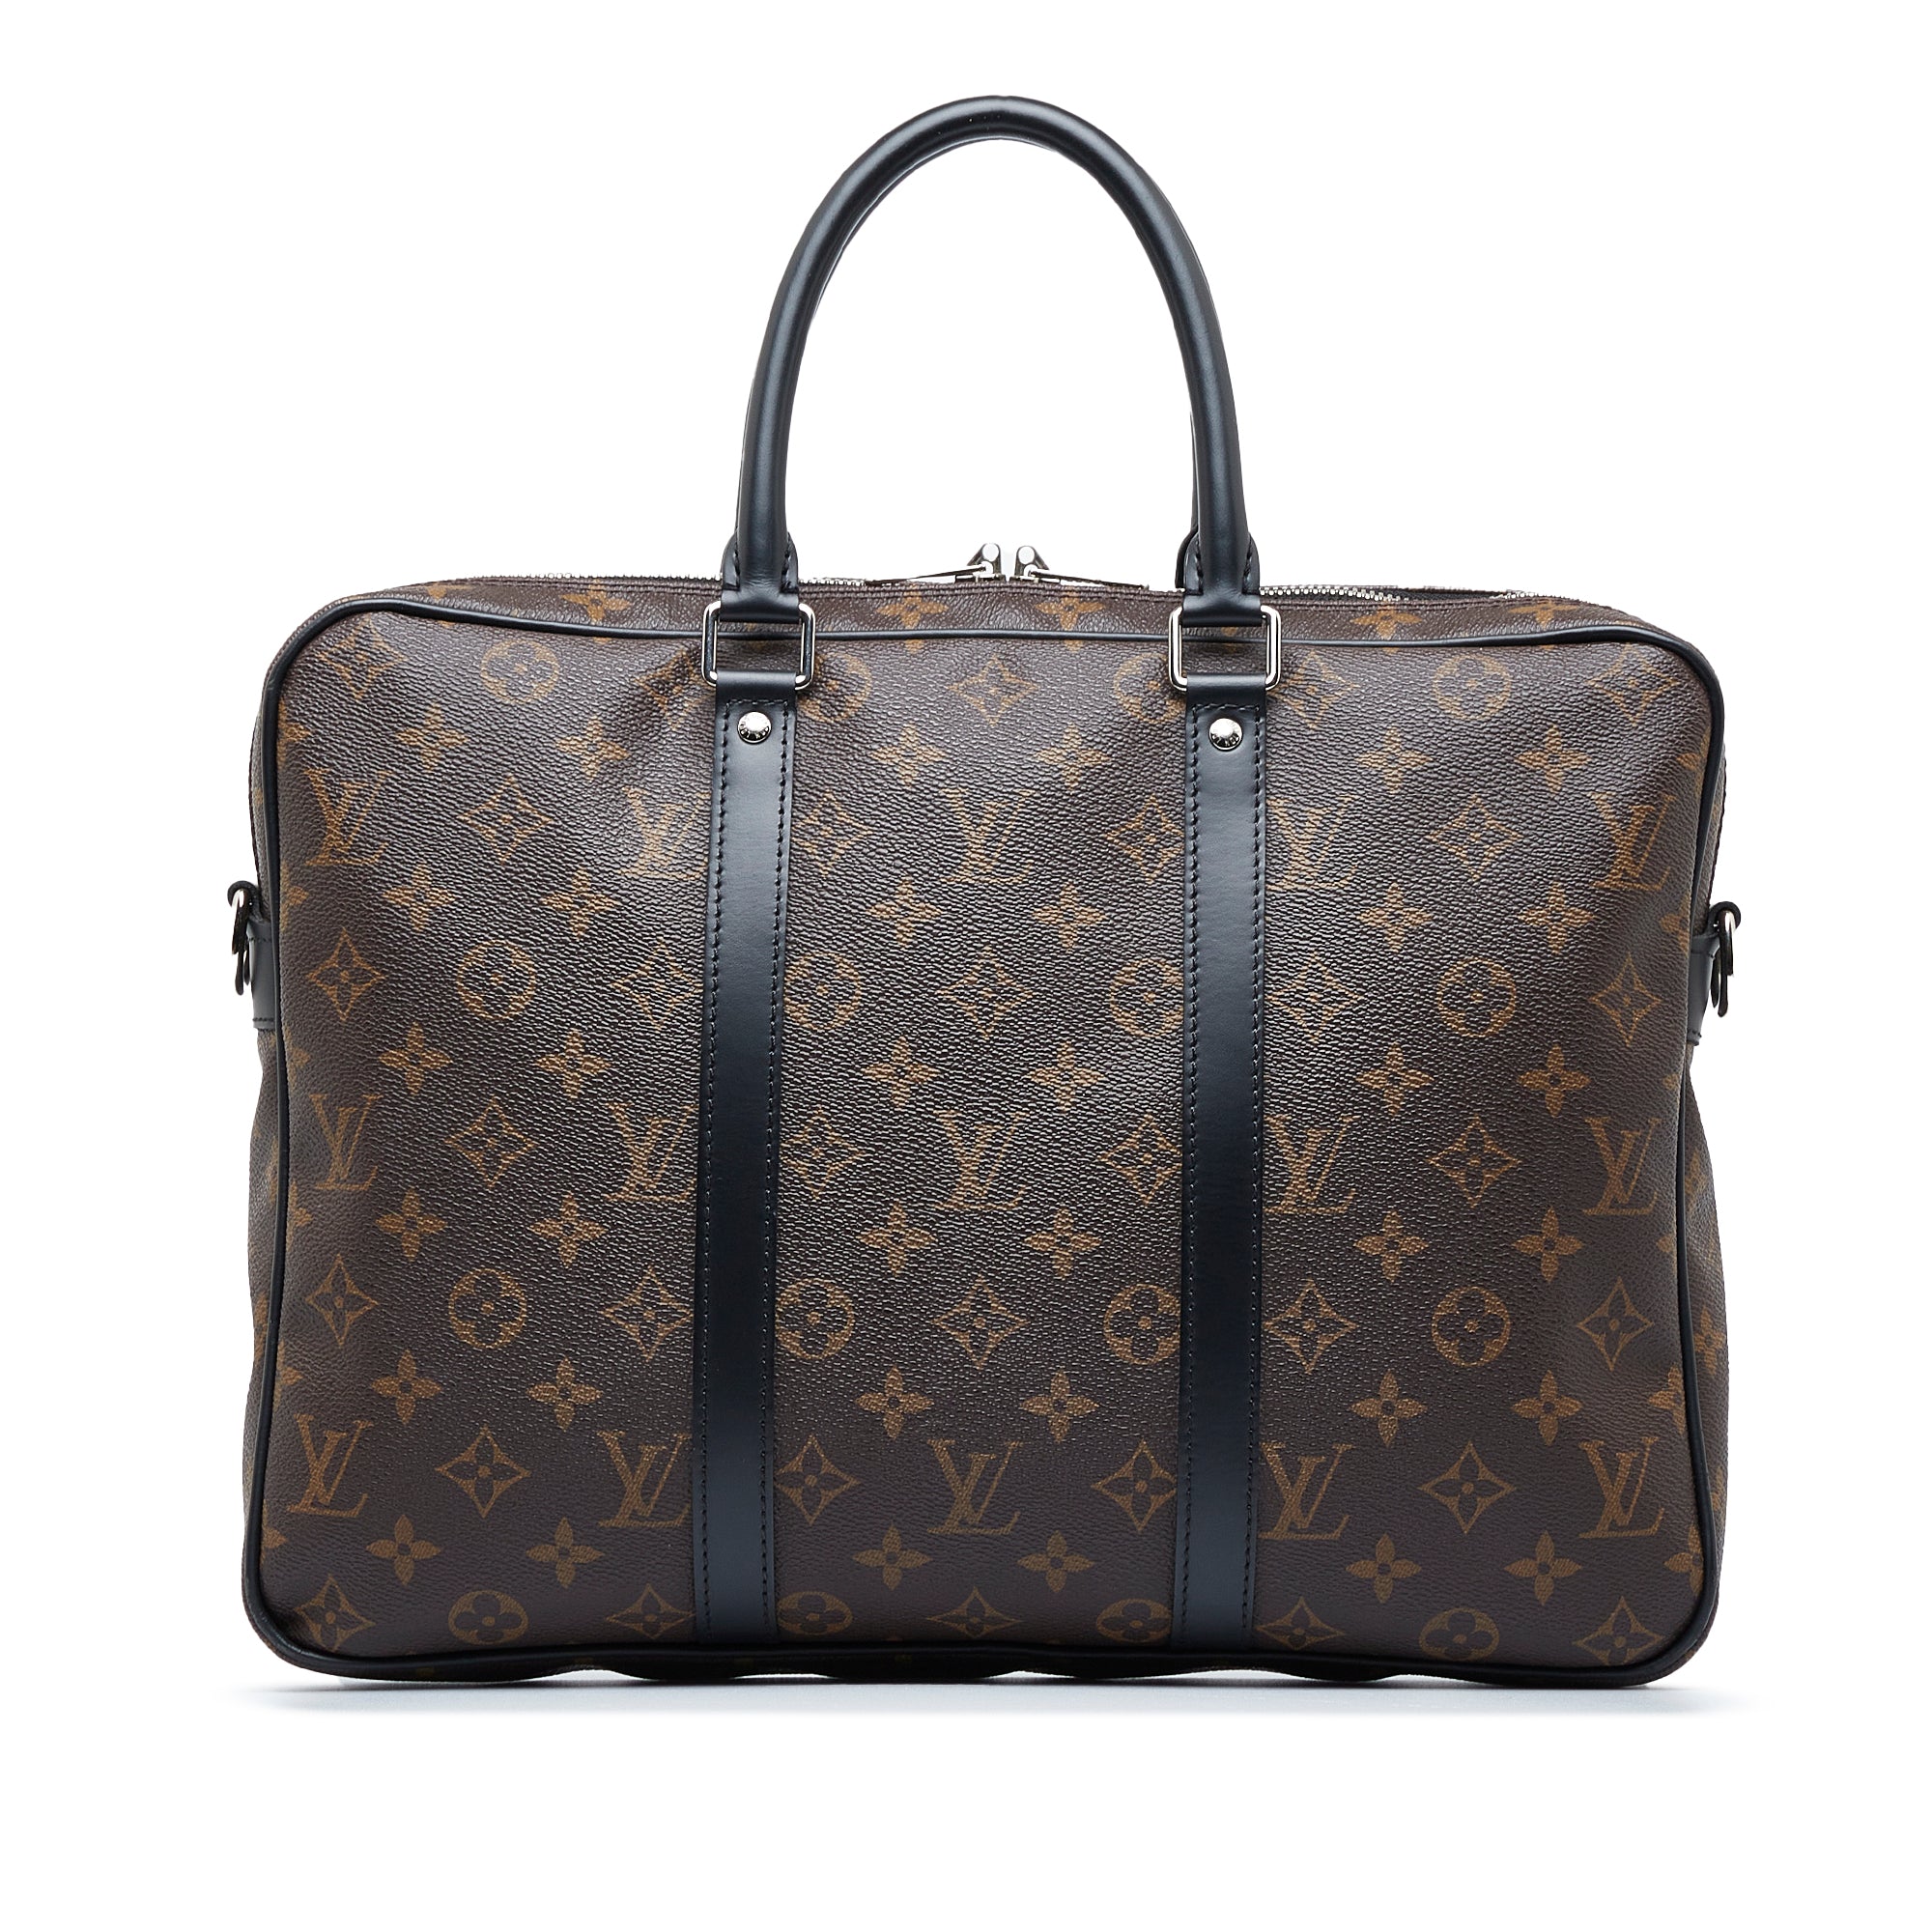 Louis Vuitton Porte-Documents Voyage Business Bag Briefcase(Brown)